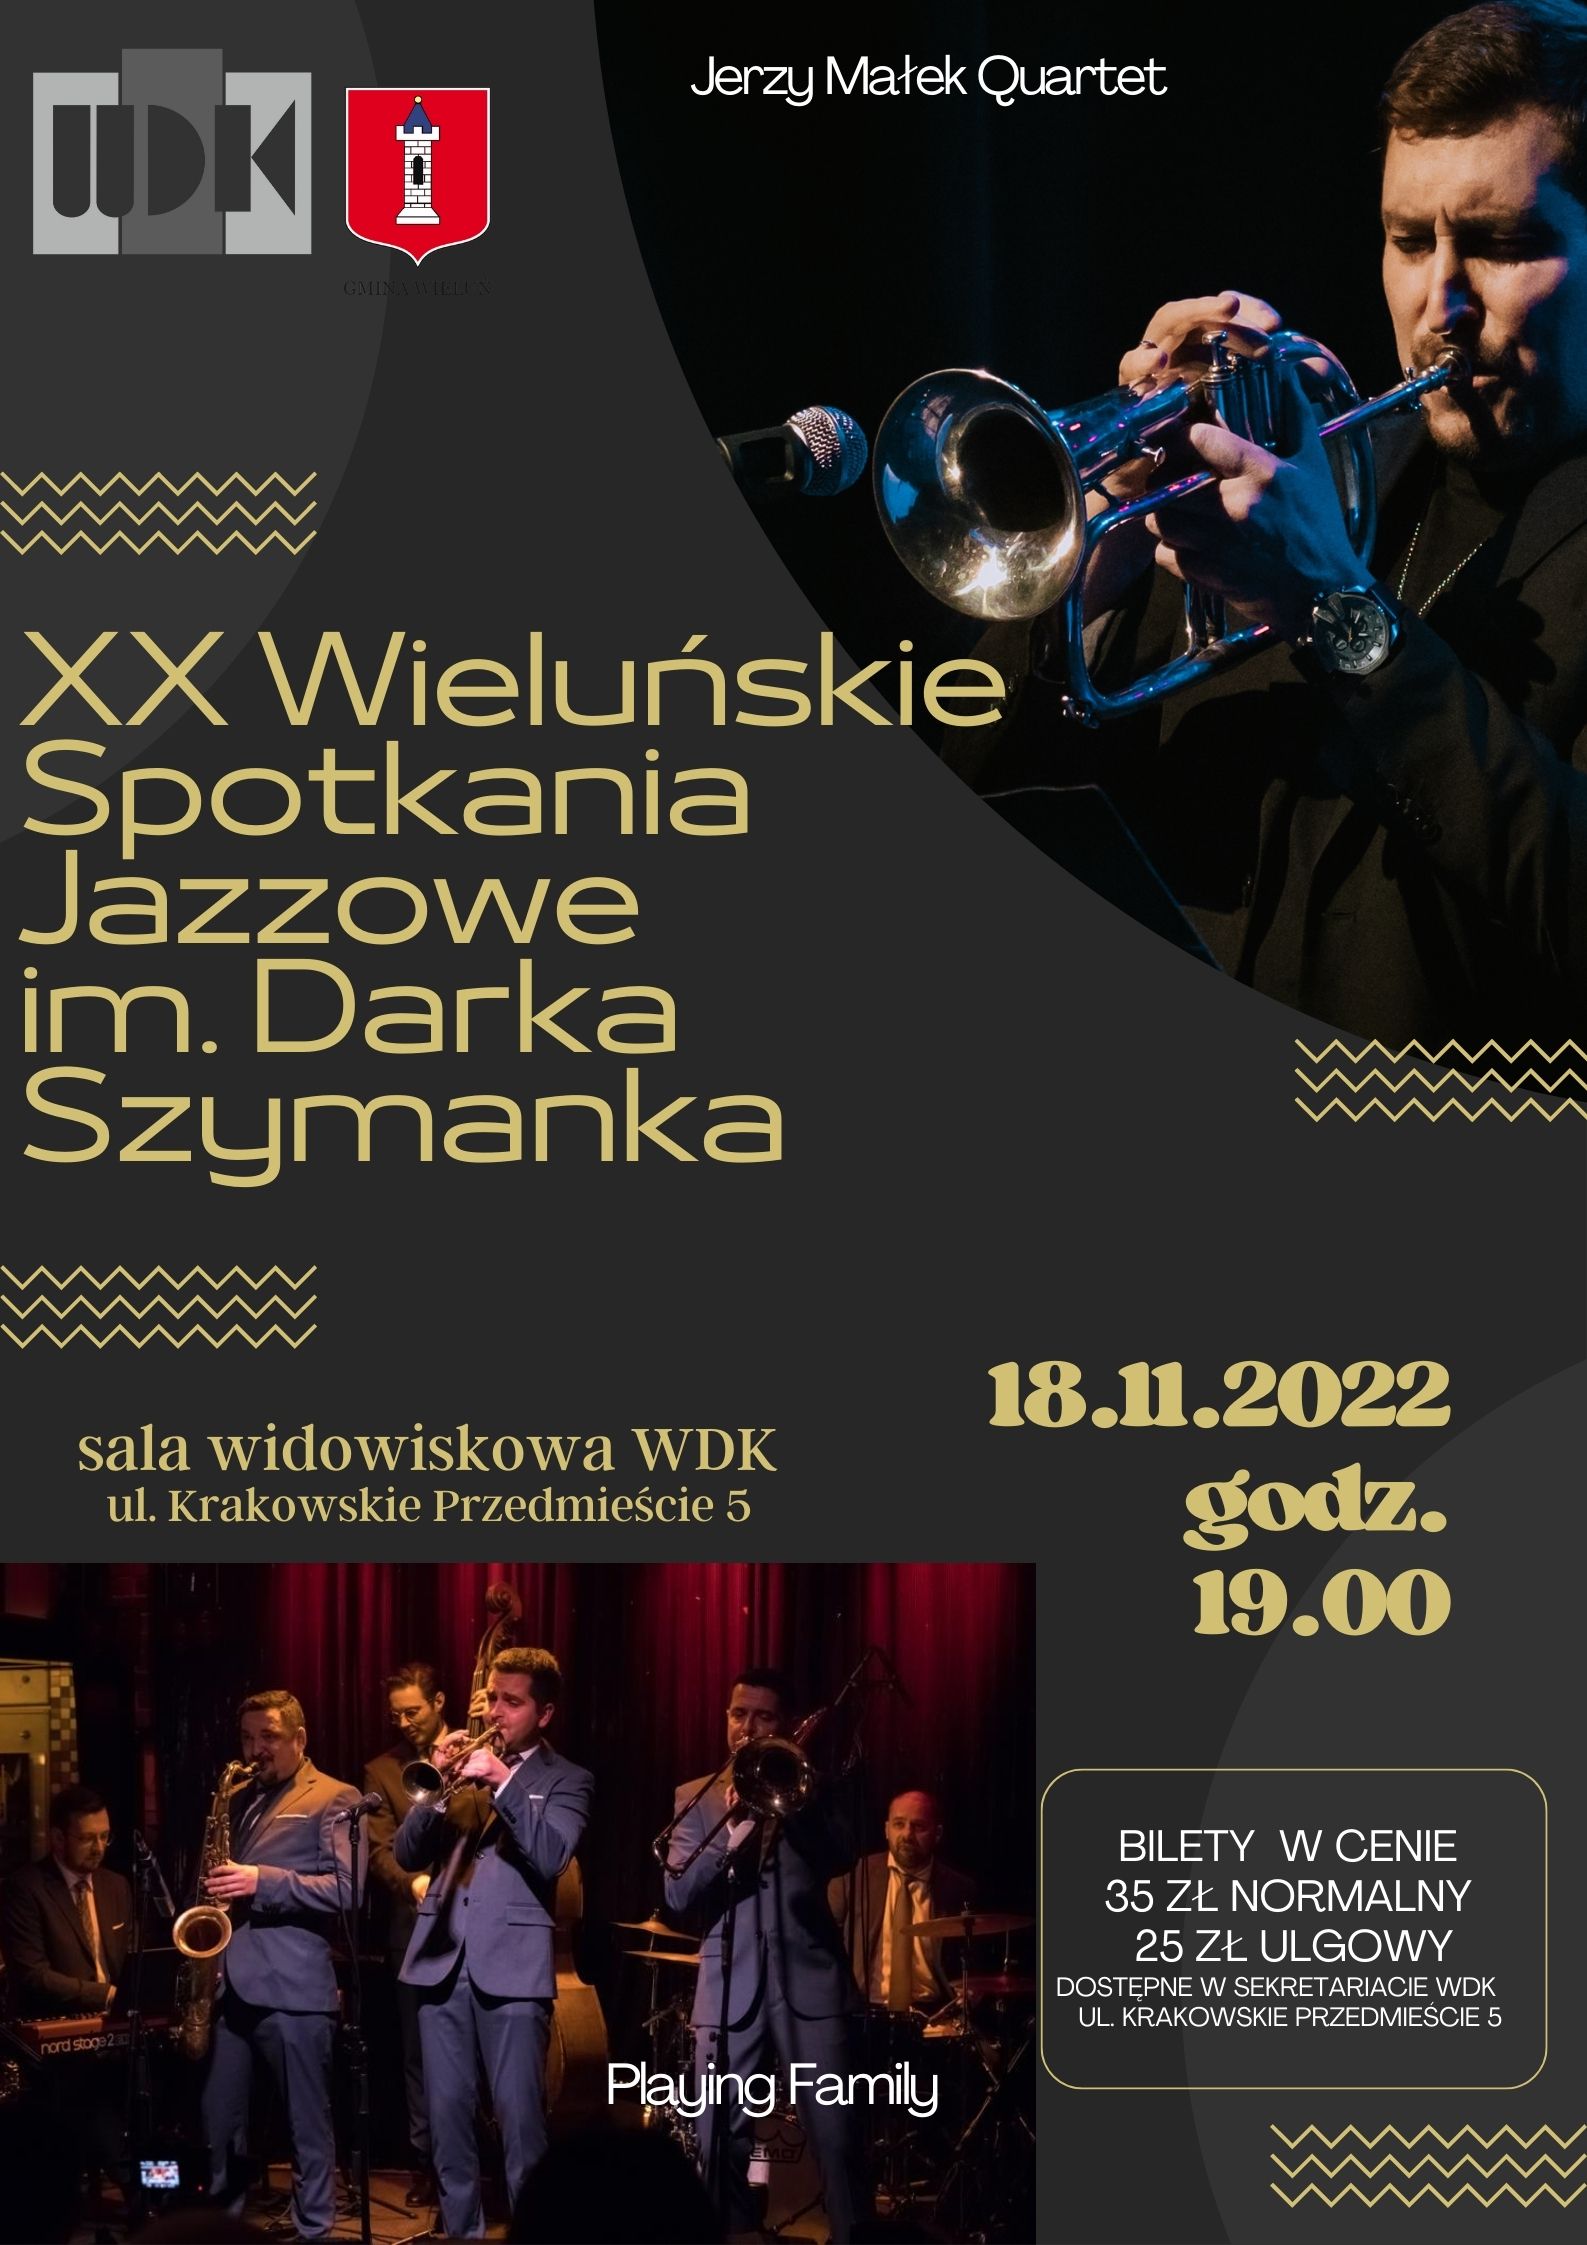 XX WieluskieSpotknia Jazzowe im Darka Szymanka 4